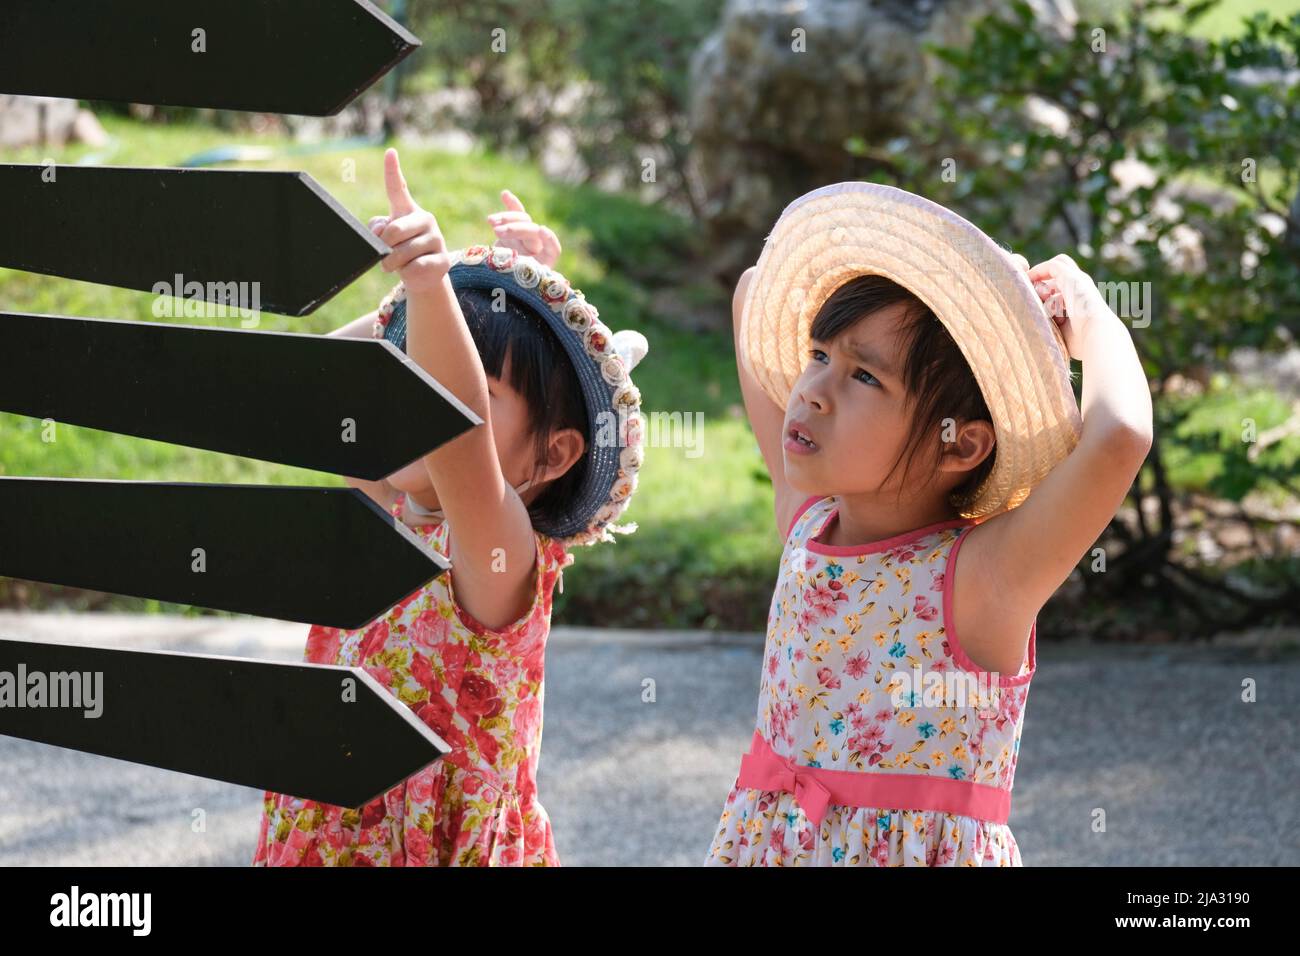 Kinder schauen auf Schilder mit Pfeilen, die auf verschiedene Orte im Park zeigen, um eine Wegbeschreibung zum Spielplatz zu finden. Stockfoto